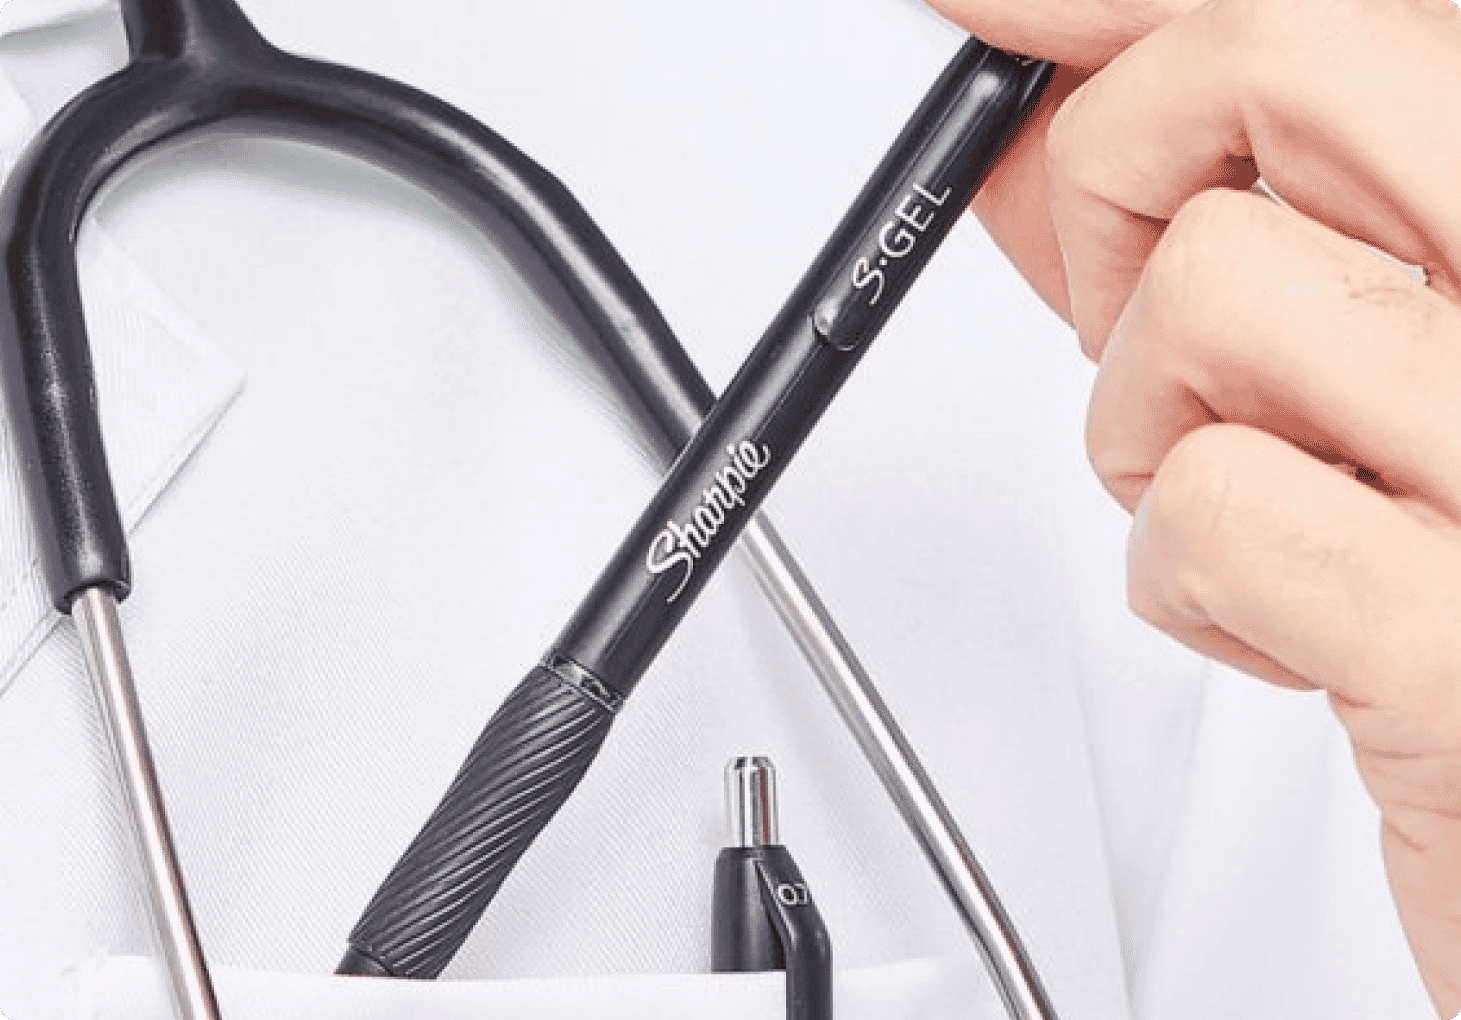 Other Pen Features Nurses Love